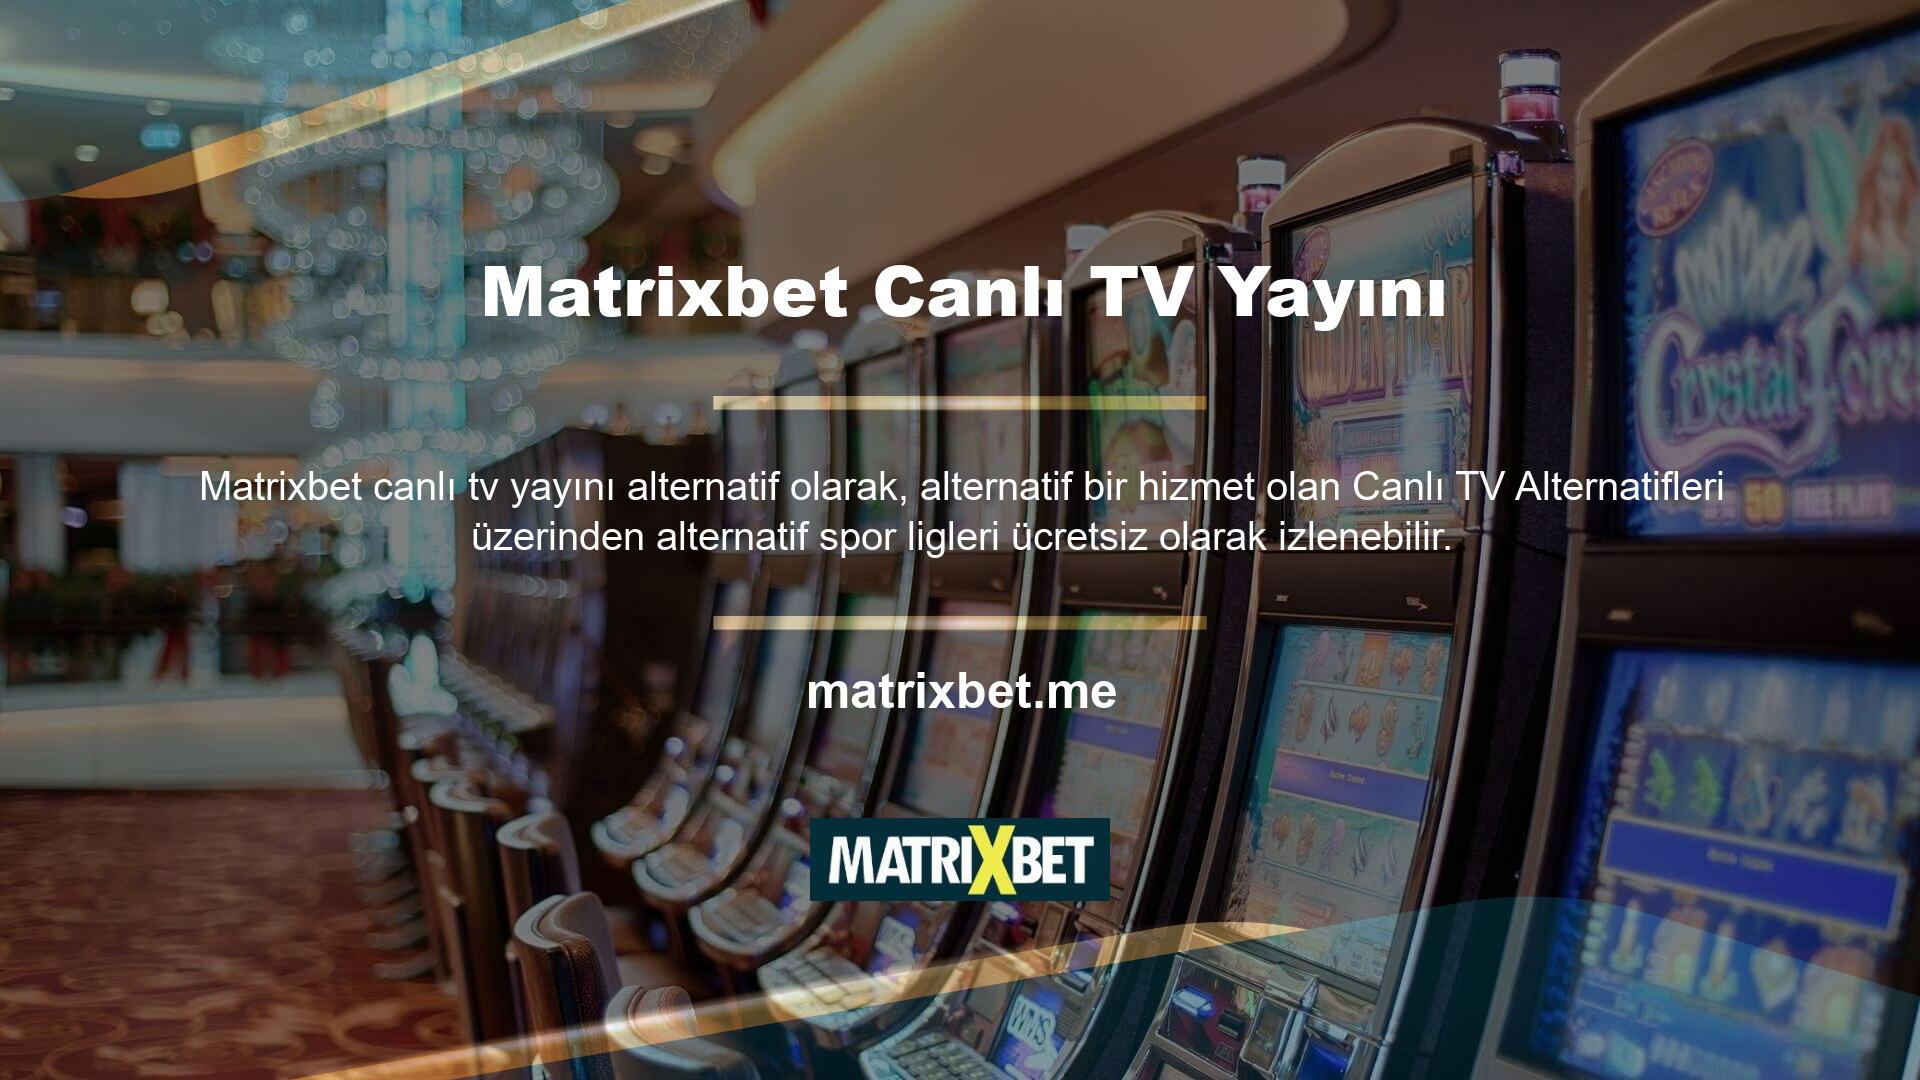 Matrixbet Canlı Destek TV'yi Twitter'da takip edin